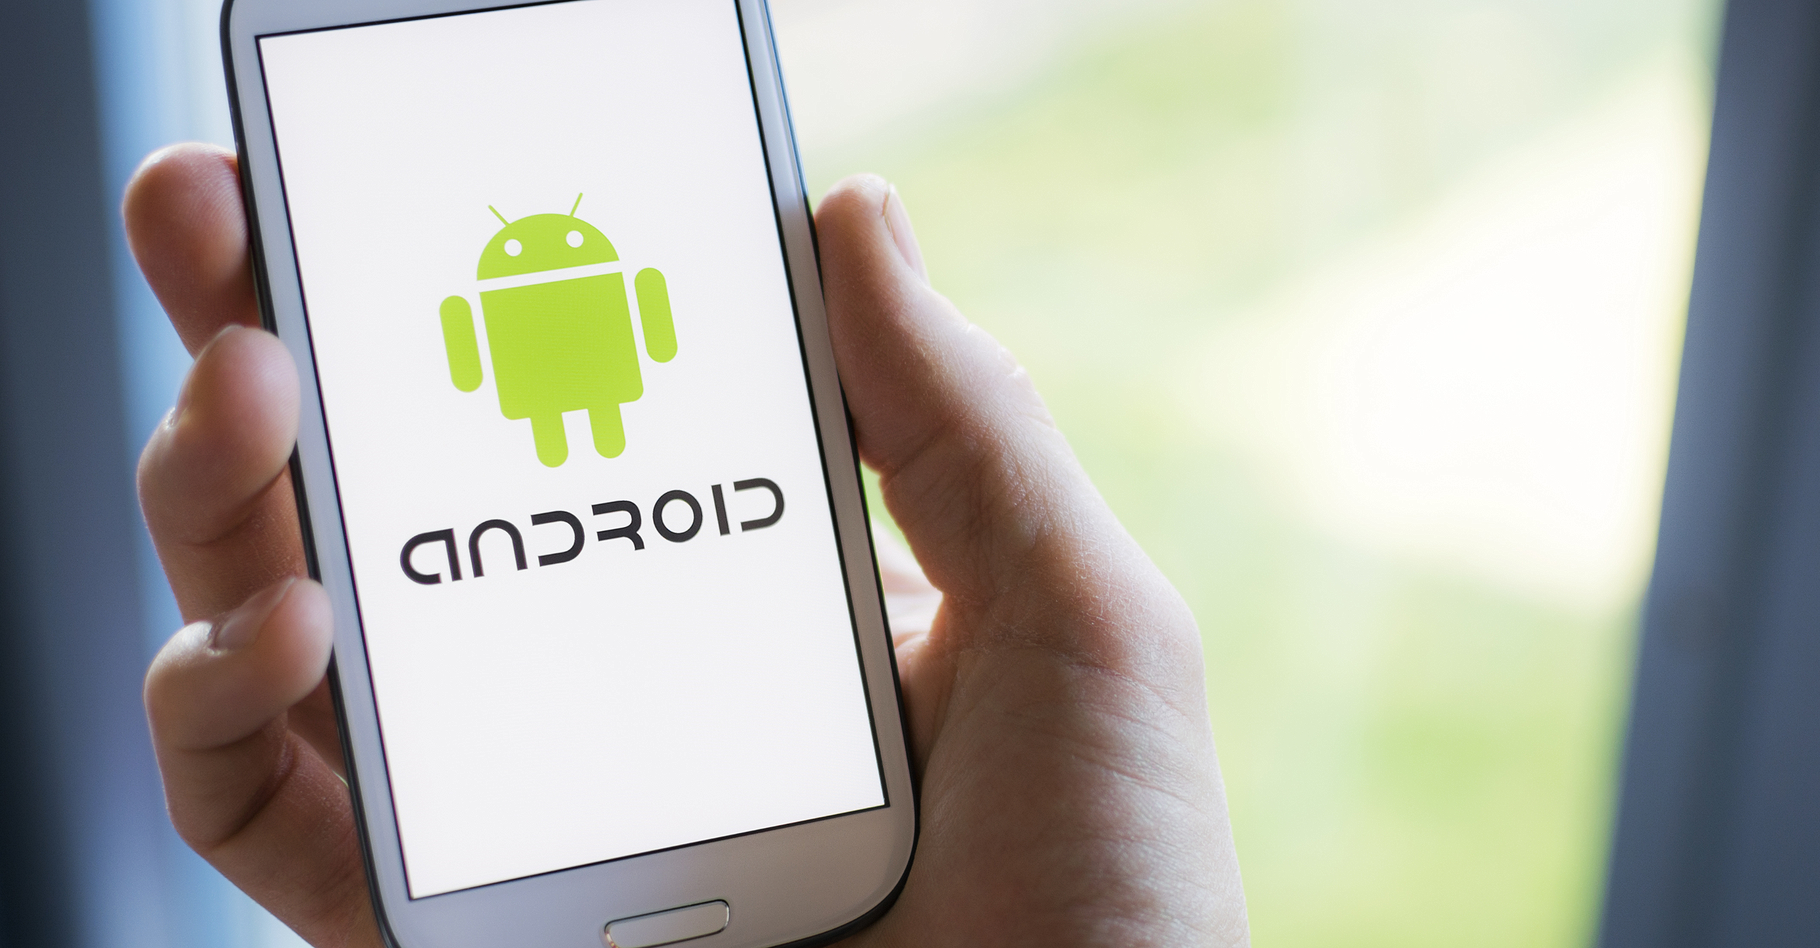 Le navigateur d'Android permet de supprimer certaines données. © Twin Design, Shutterstock